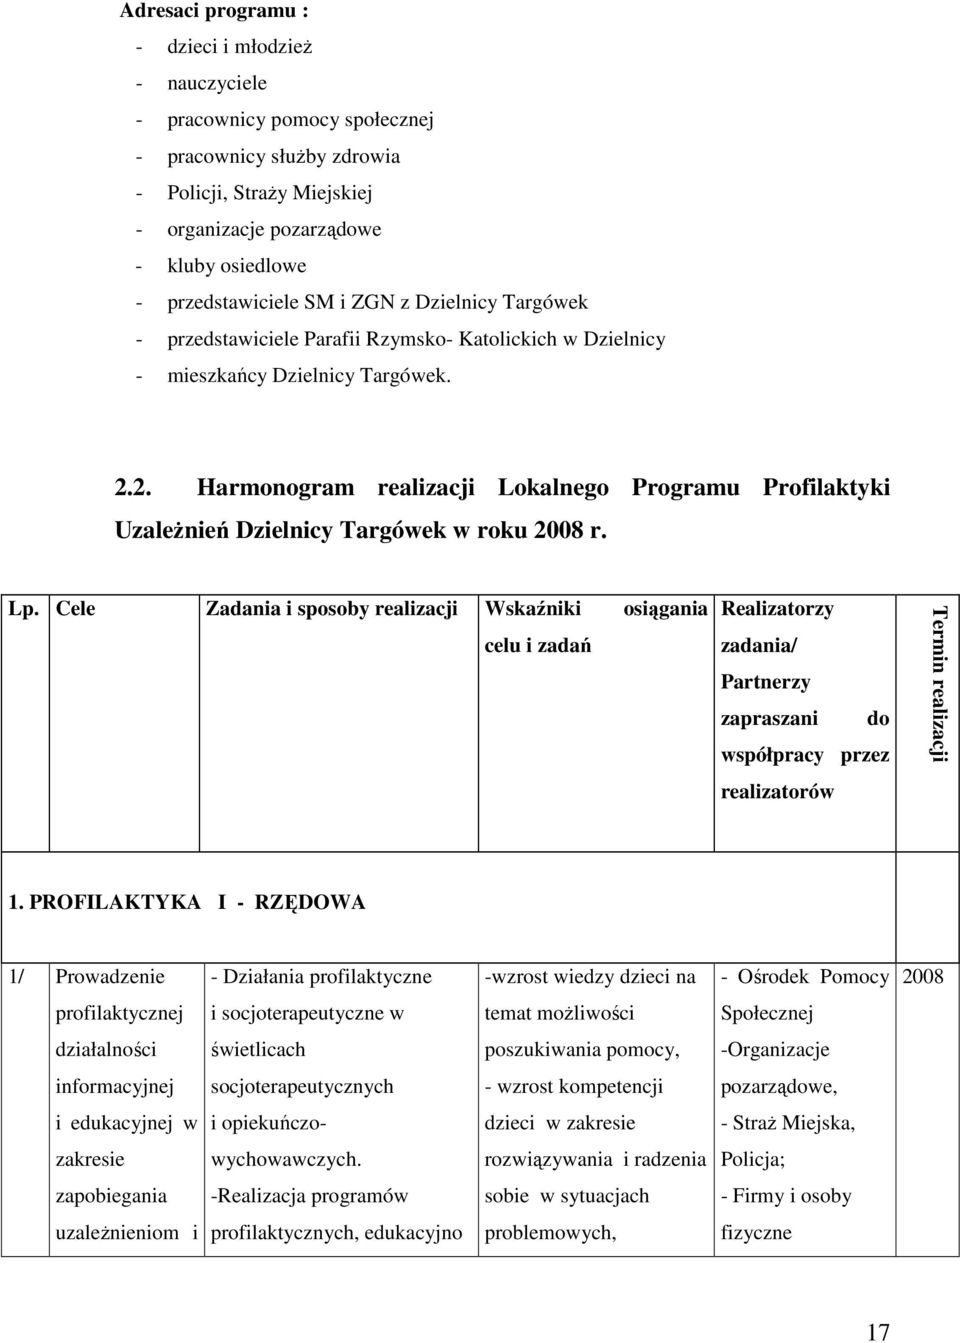 2. Harmonogram realizacji Lokalnego Programu Profilaktyki UzaleŜnień Dzielnicy Targówek w roku 2008 r. Lp.